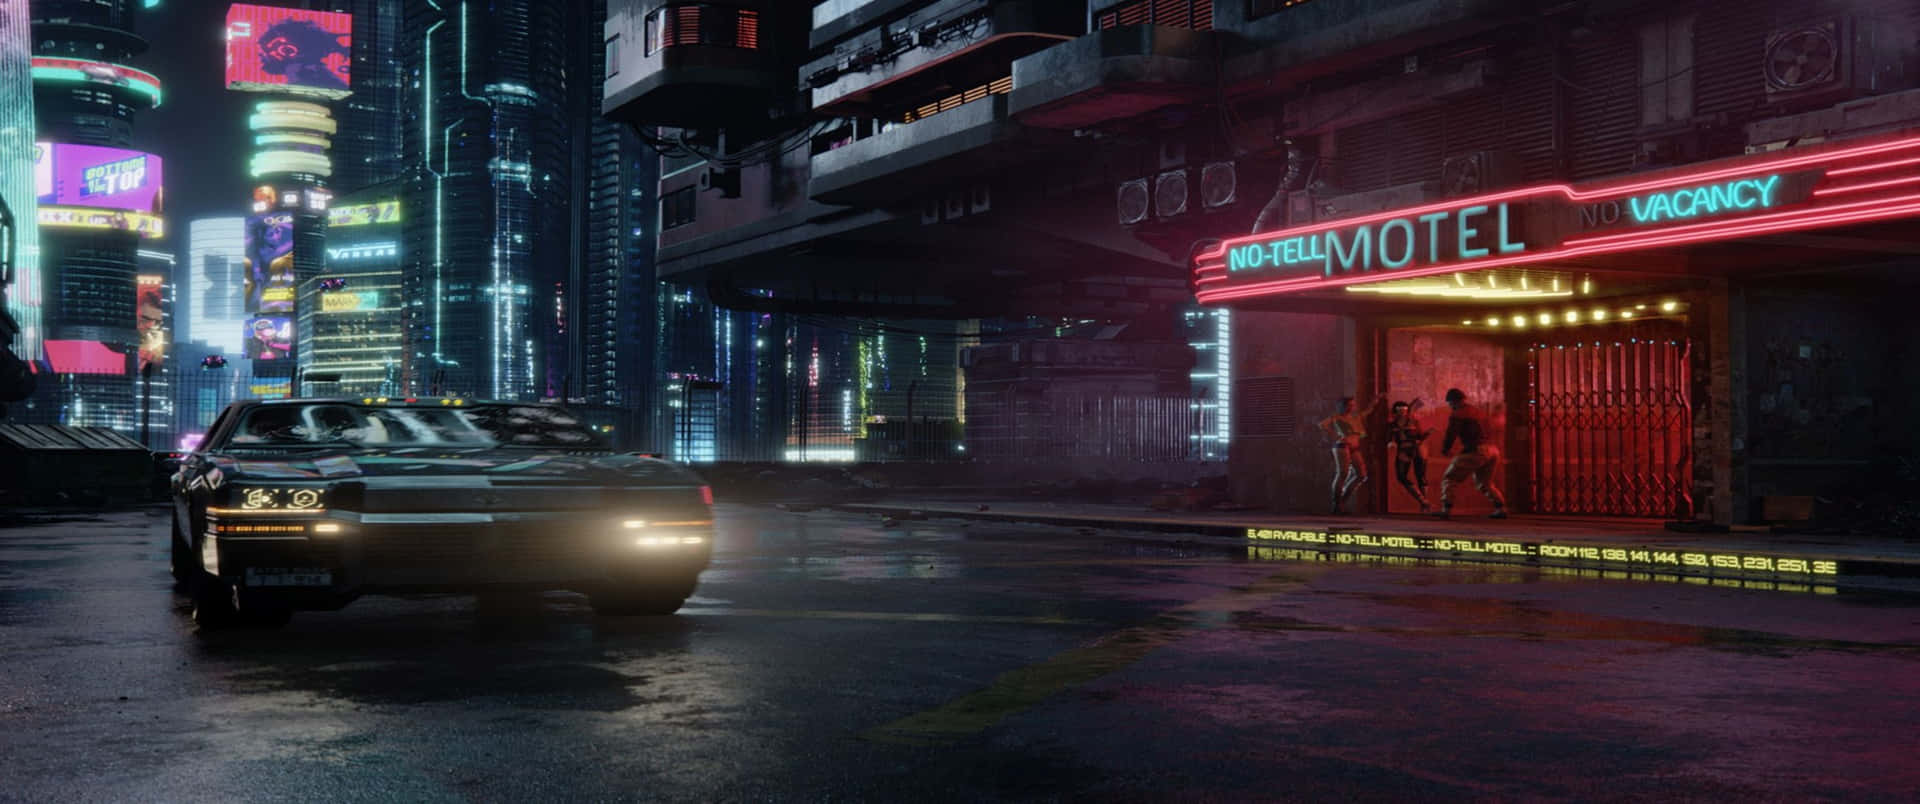 3440x1440phintergrundbild Für Cyberpunk 2077: Auto Vor Dem Hotel Geparkt